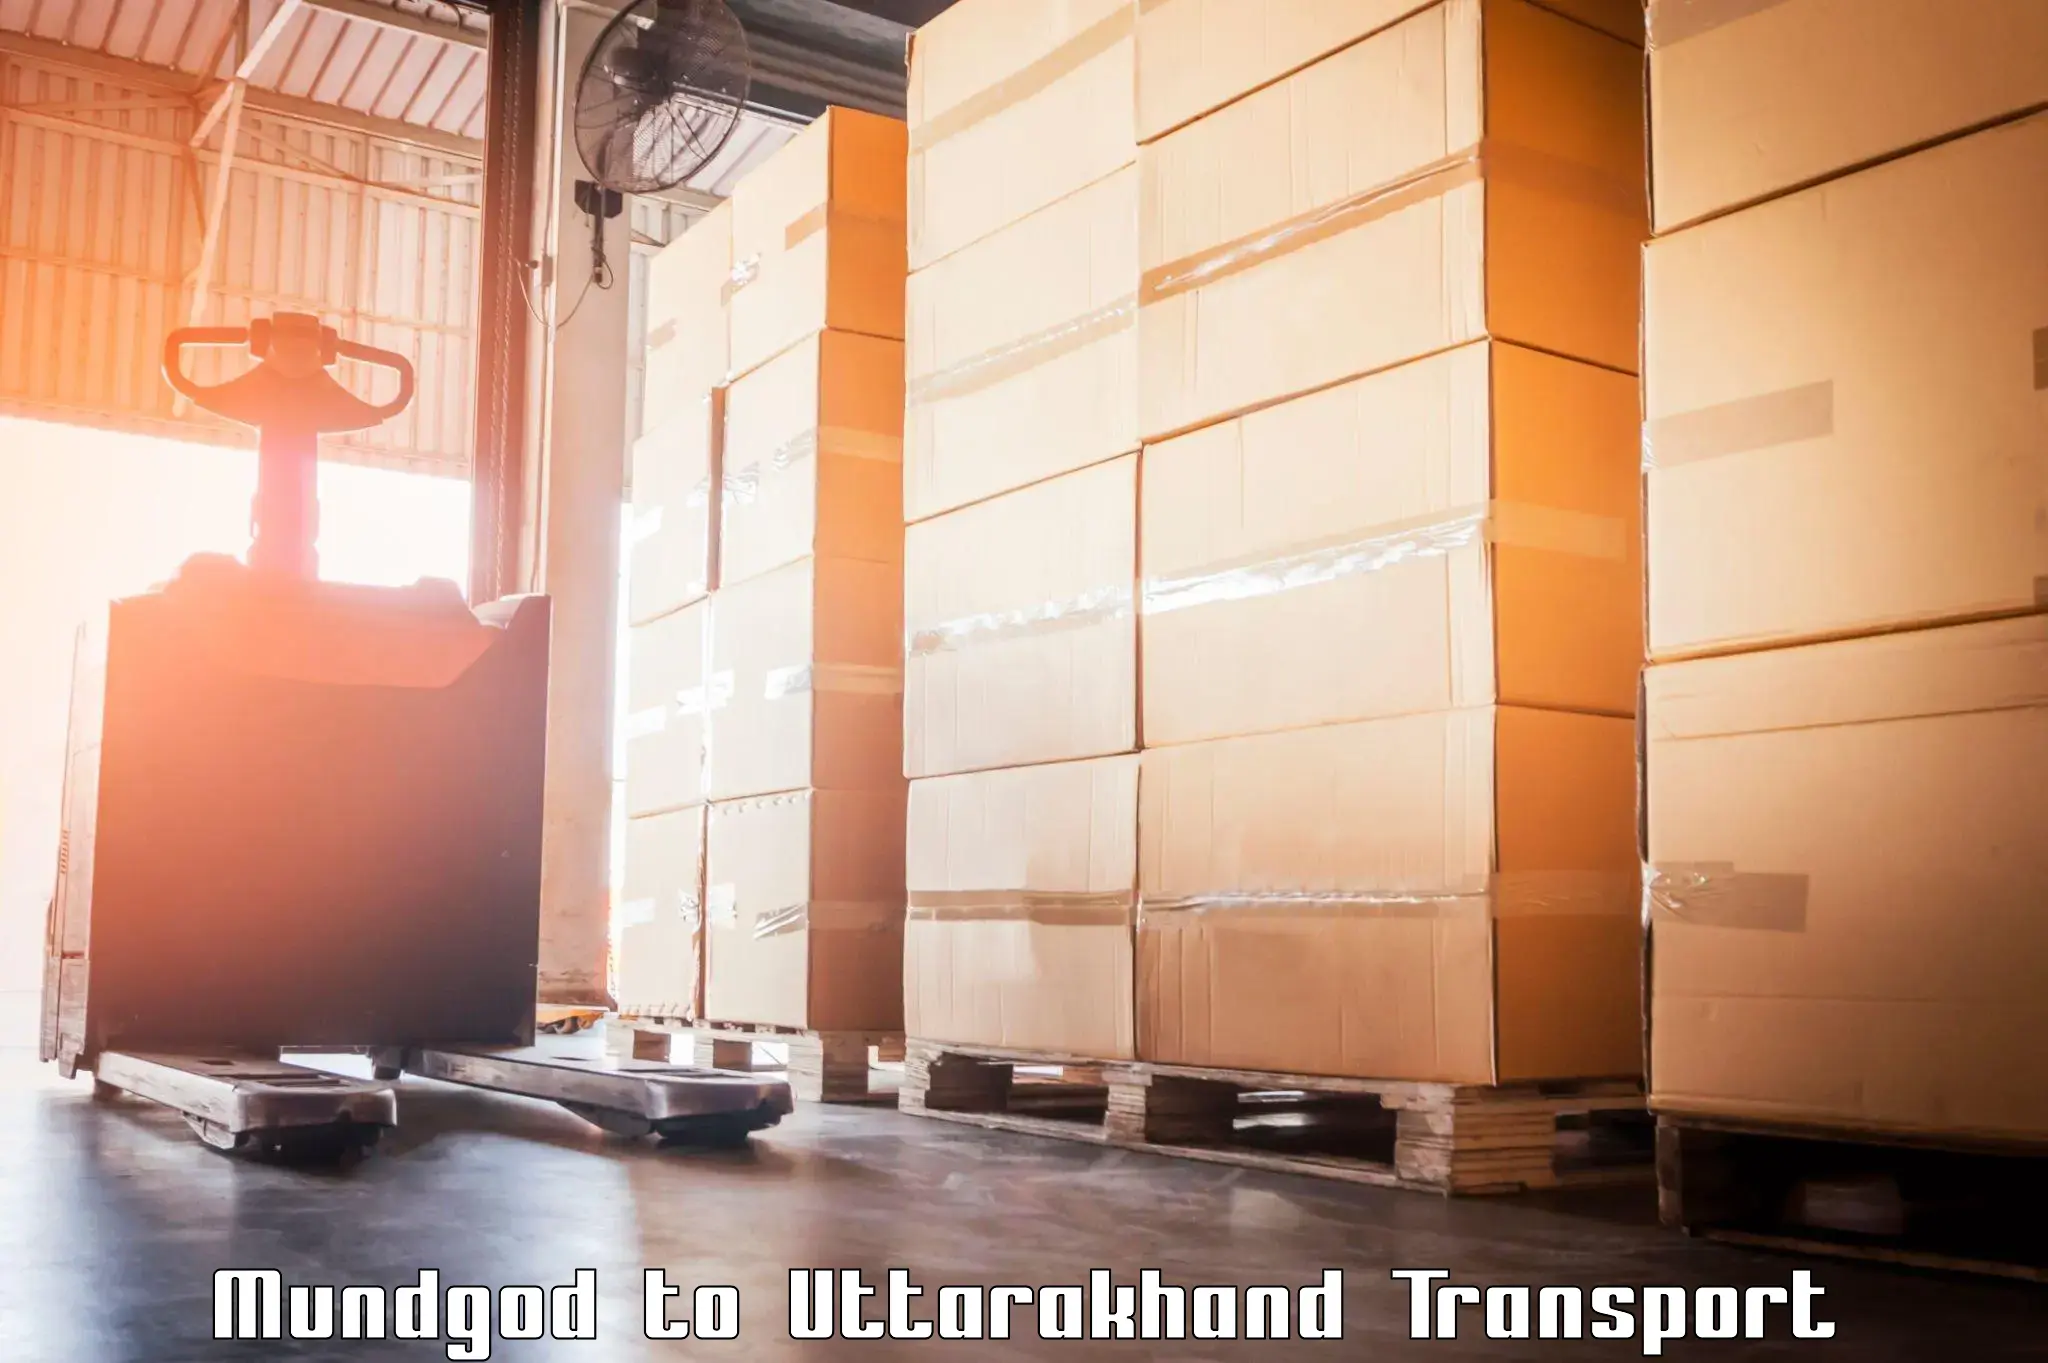 Transport in sharing Mundgod to Lansdowne